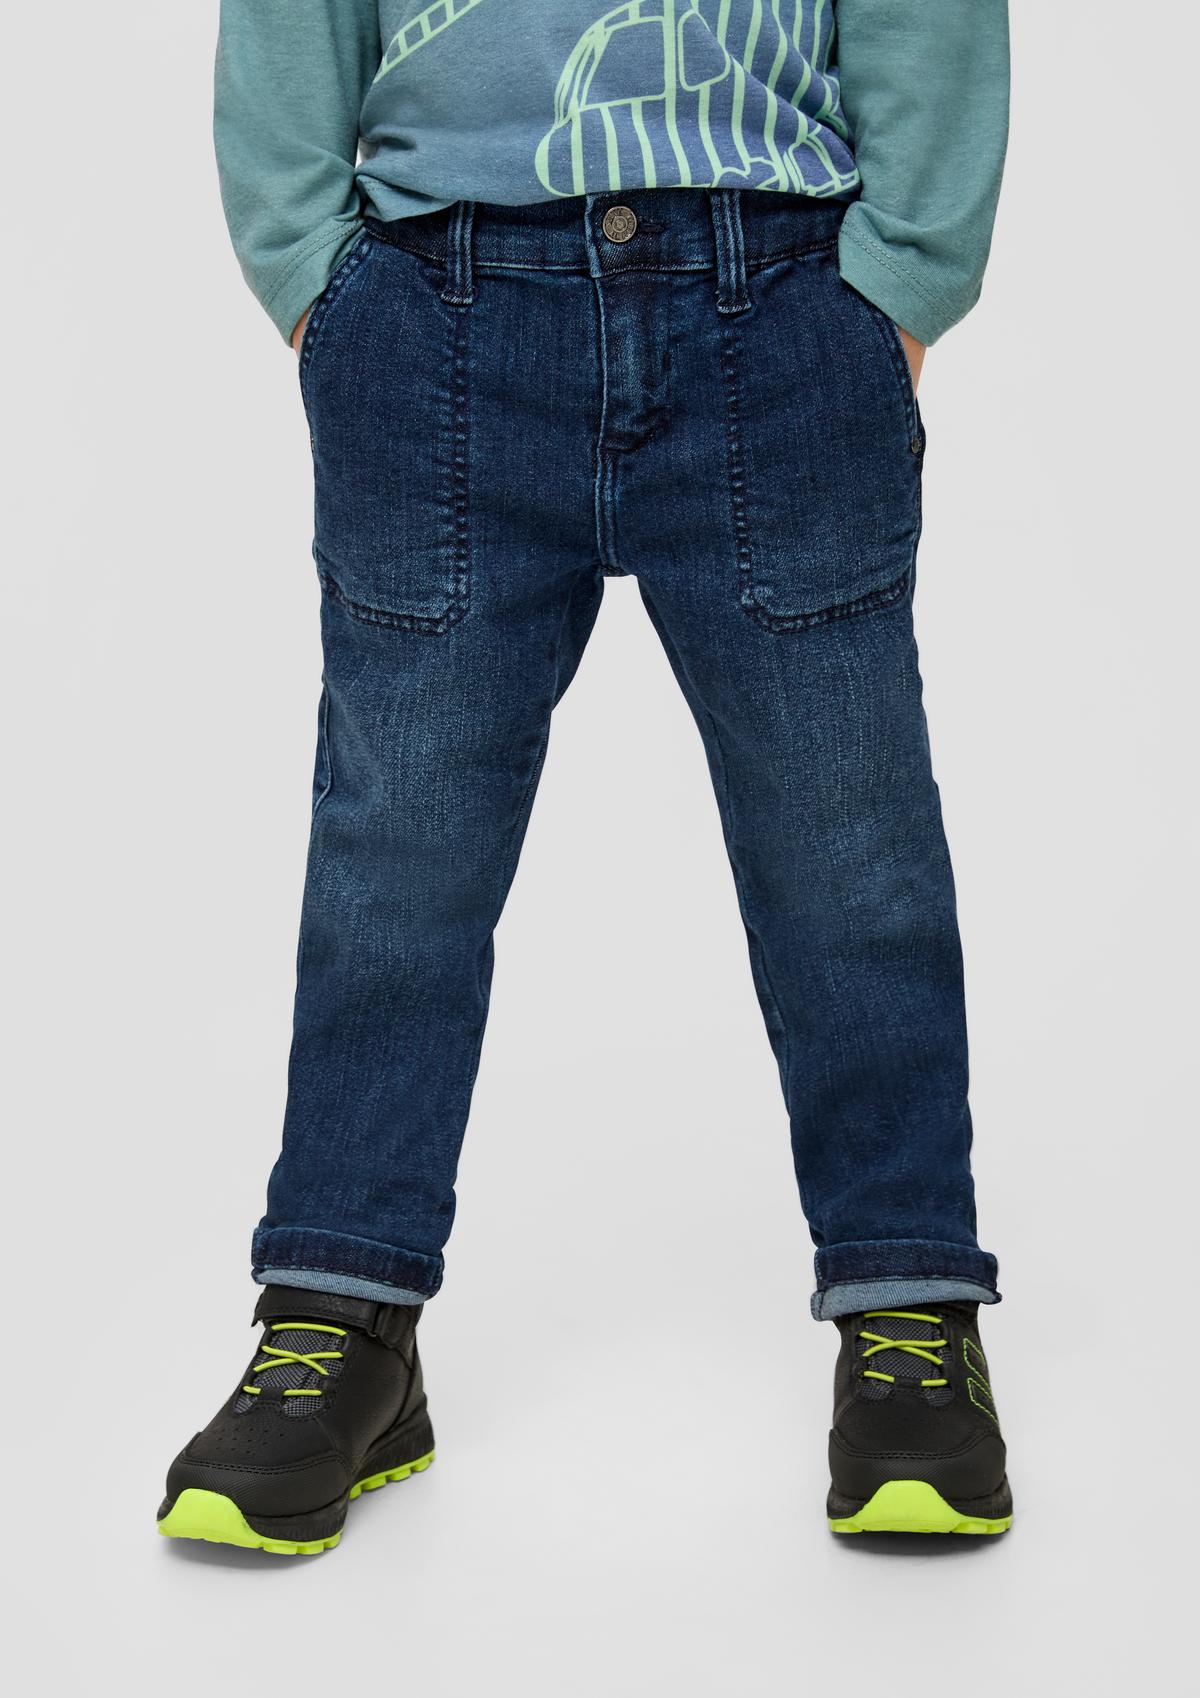 Pelle : jean ajustable à la taille